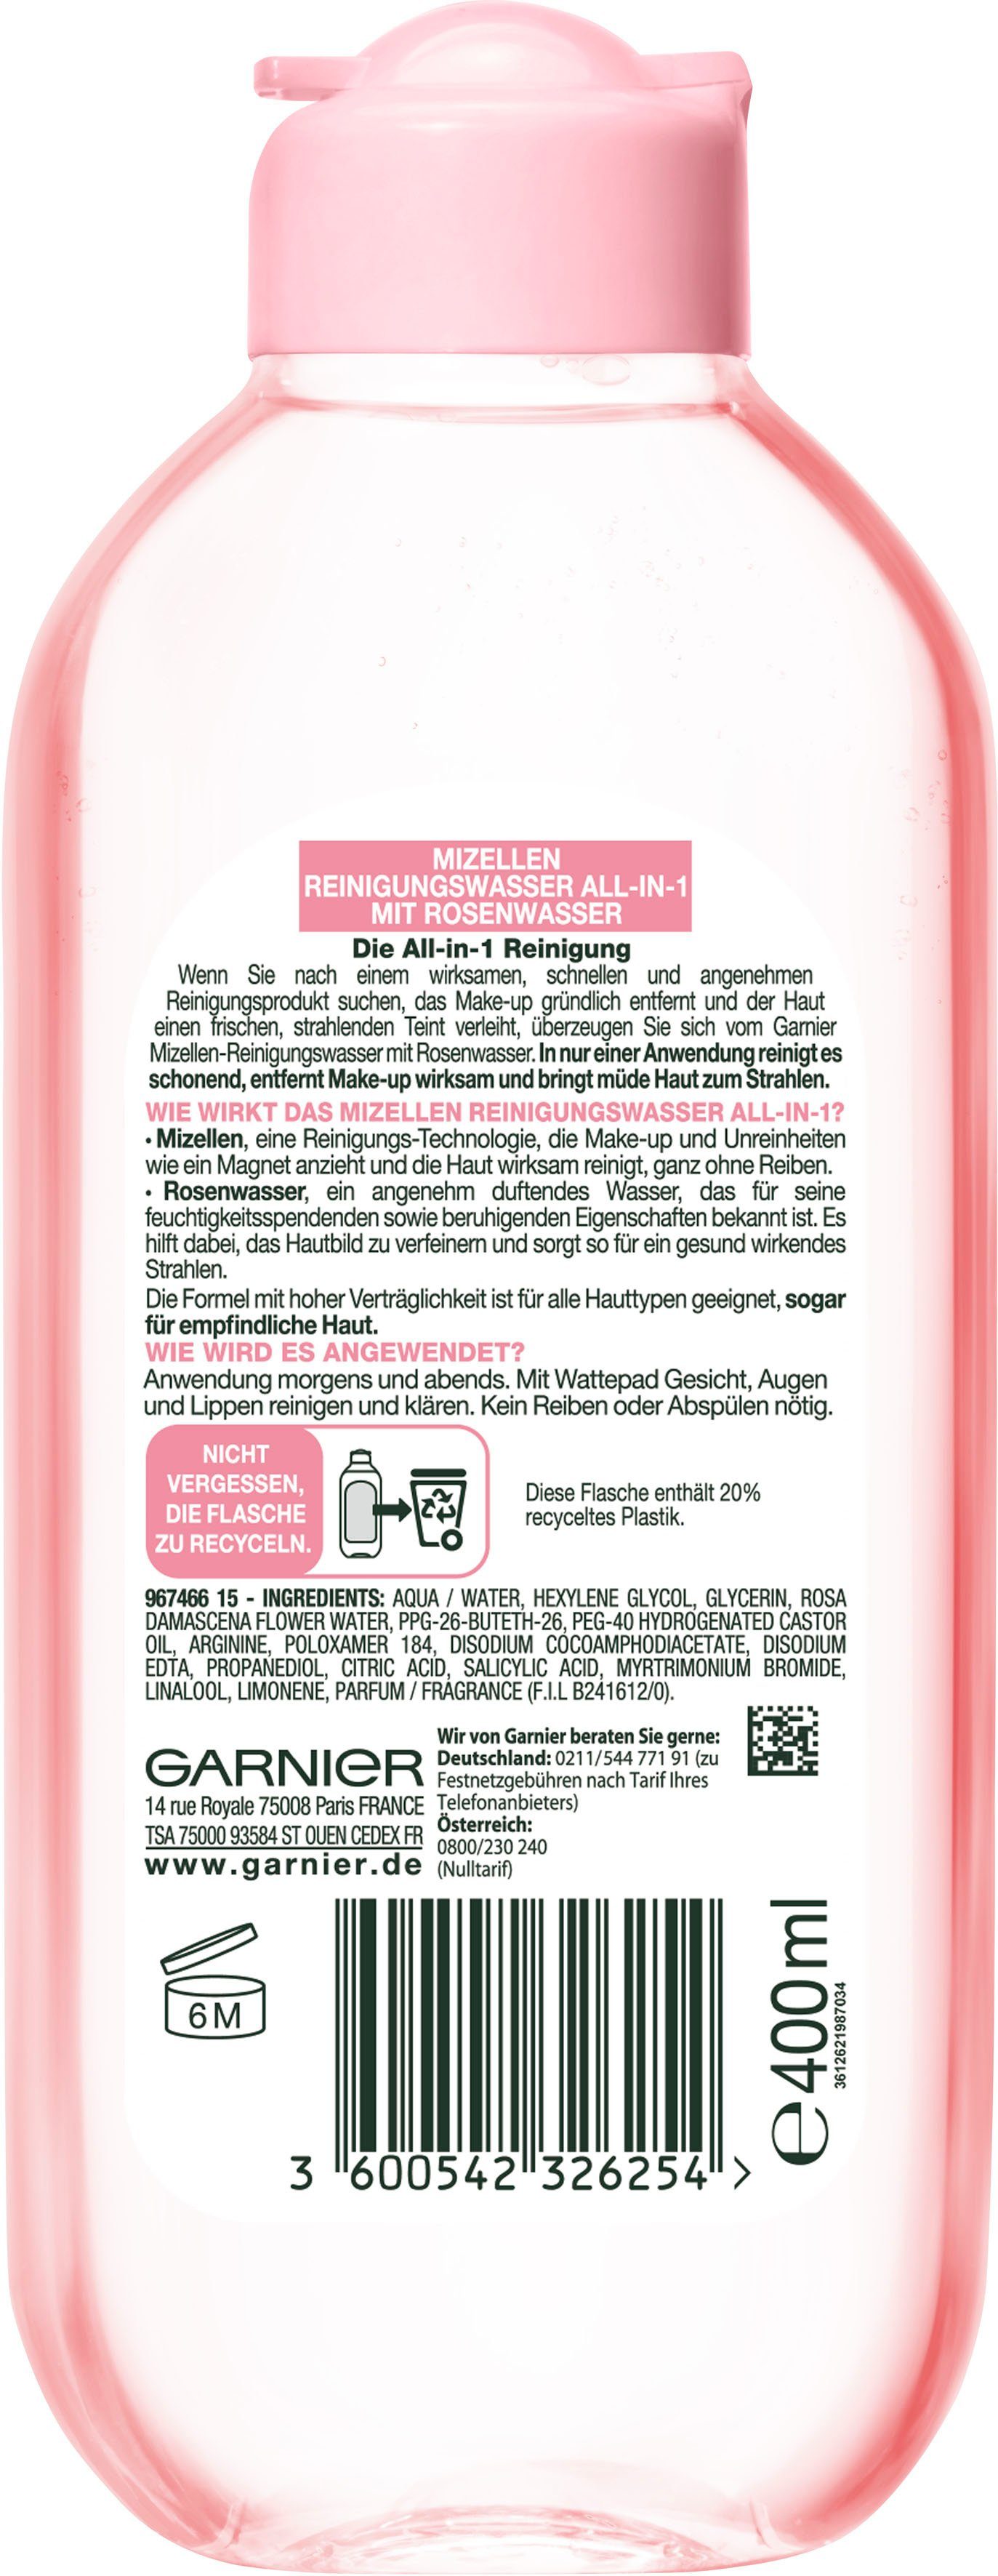 GARNIER Gesichtswasser Mizellen Reinigungswasser All-in-1, Rosenwasser mit